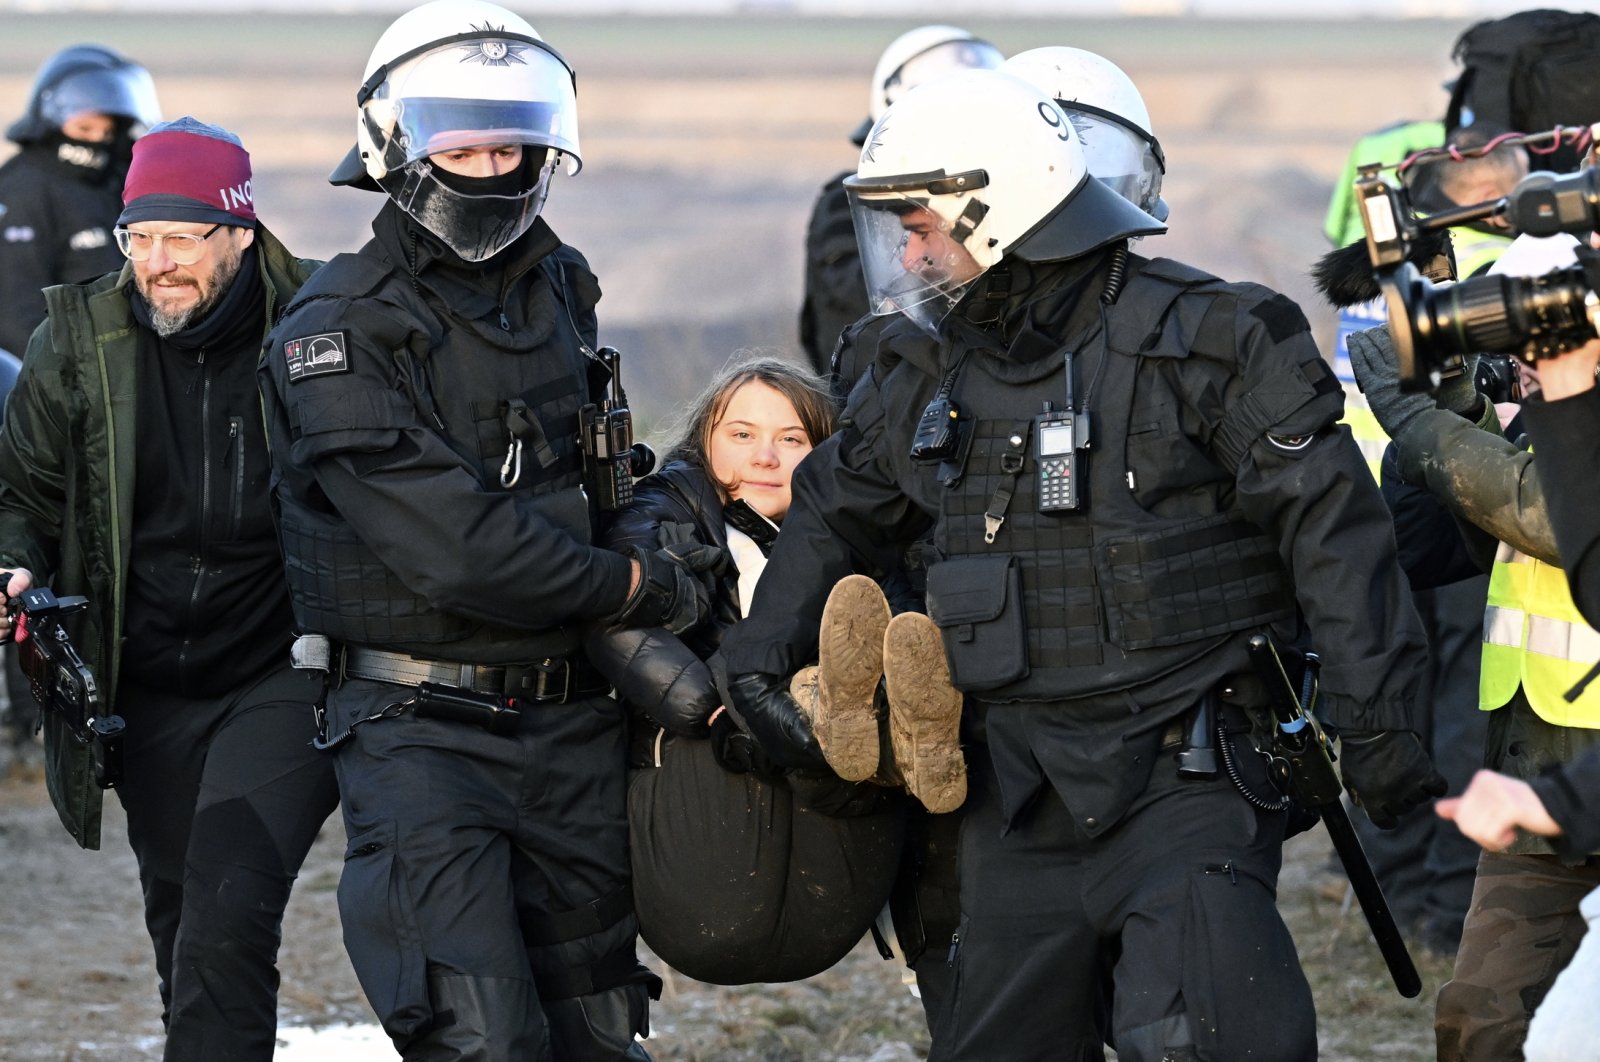 ‘Protes iklim bukan kejahatan,’ kata Greta Thunberg setelah penahanan